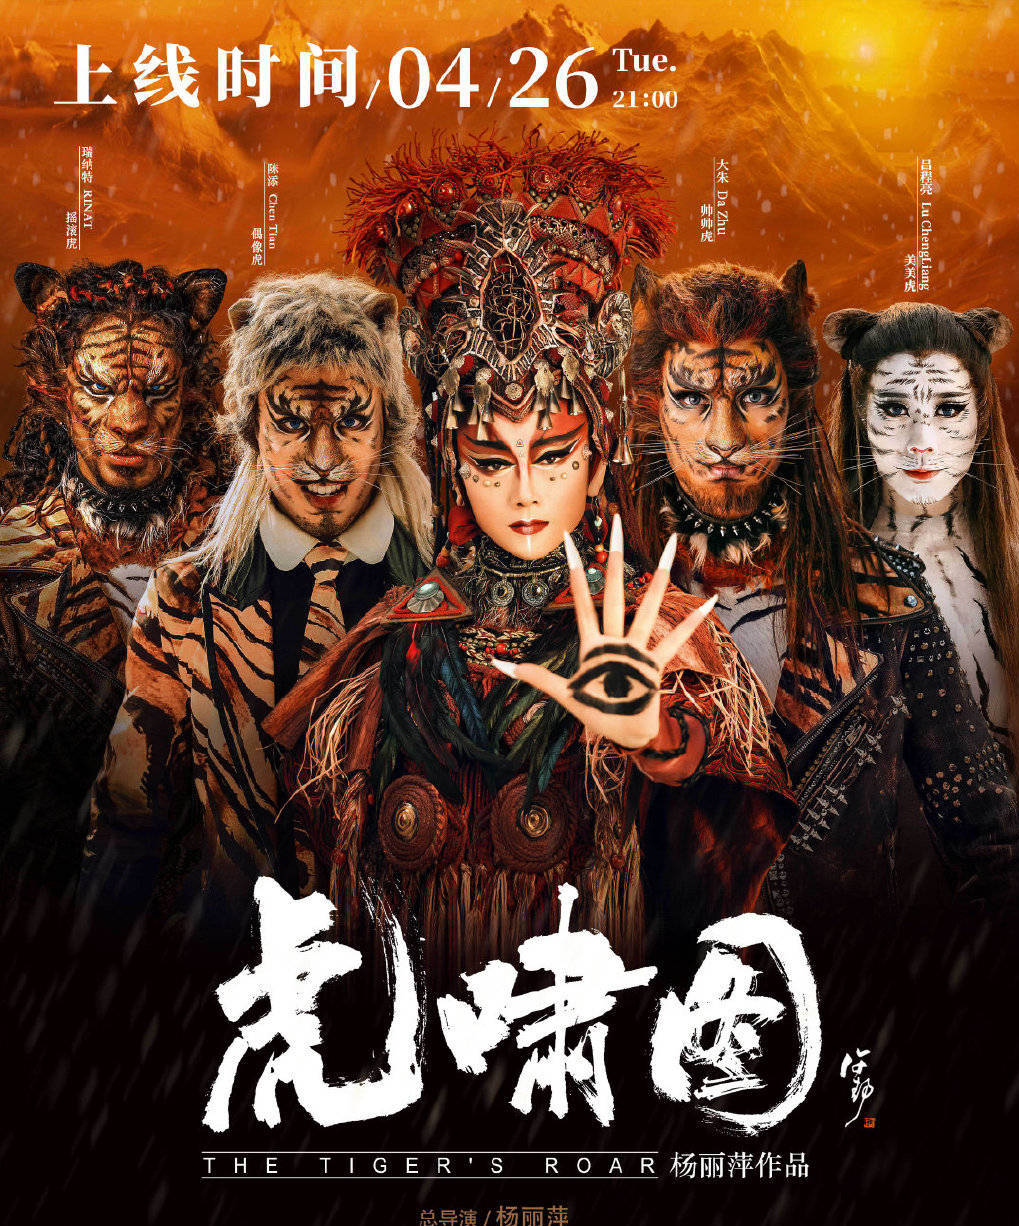 杨丽萍生肖系列舞蹈艺术片《虎啸图》开播 引众多好评